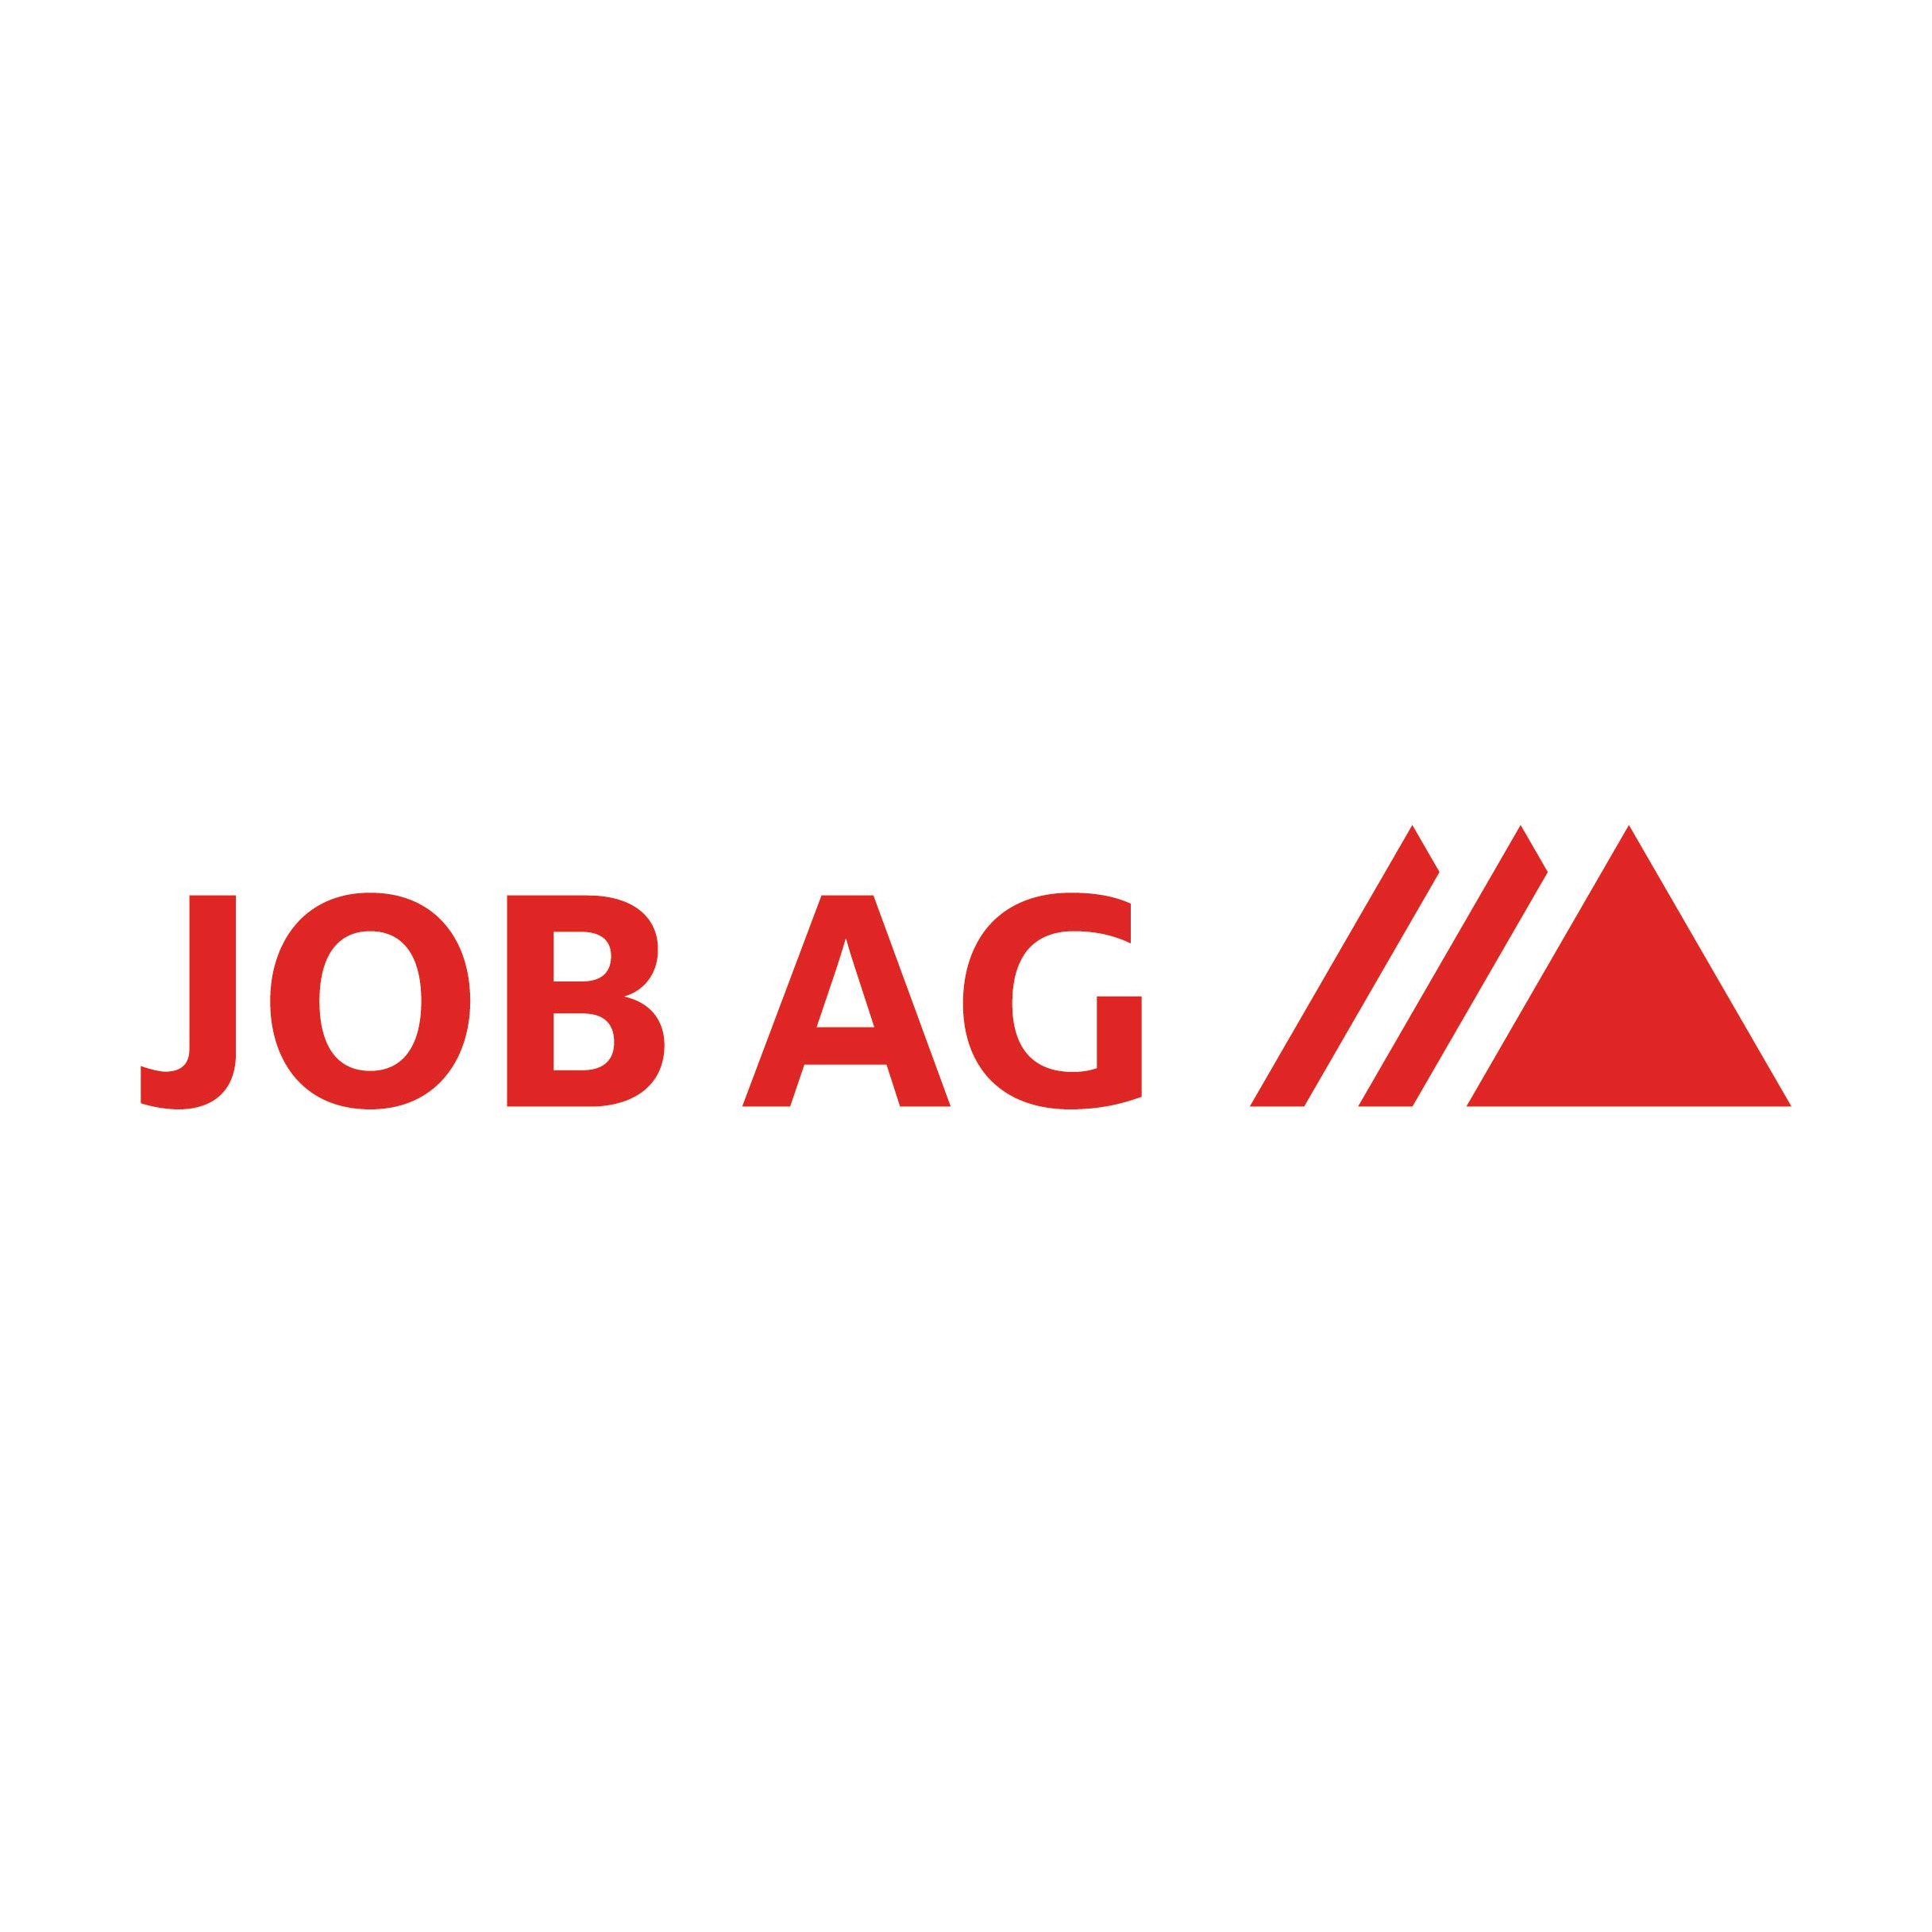 JOB AG Personal in Kassel - Logo